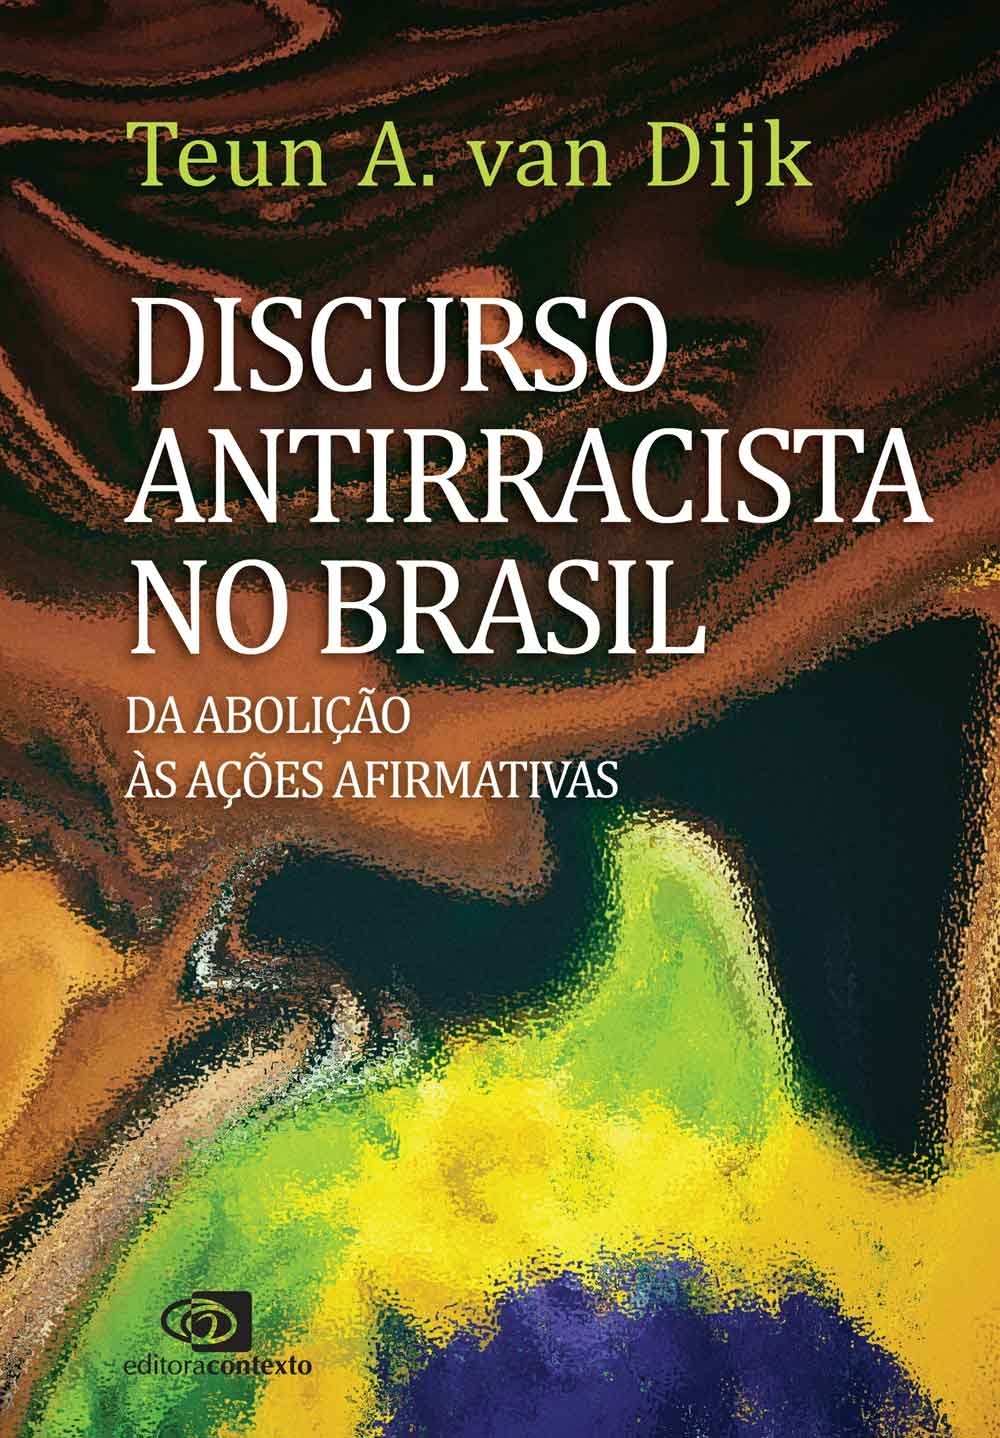 Discurso antirracista no Brasil: da abolição às ações afirmativas